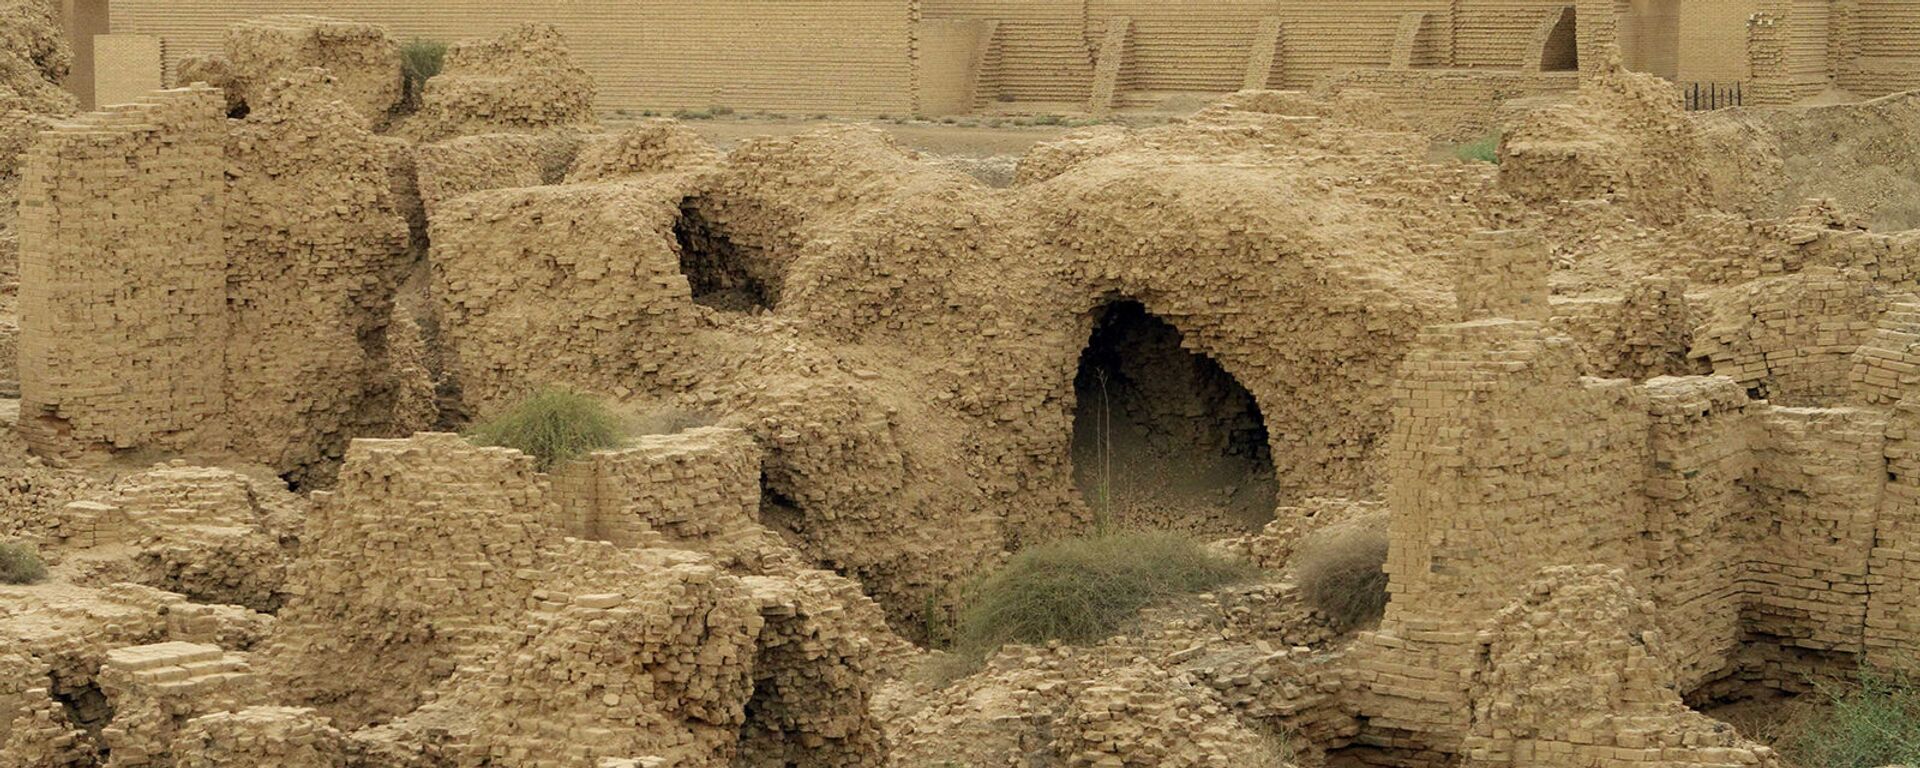 Нереставрированные руины северного дворца в древнем городе Вавилон на юге Ирака - Sputnik Армения, 1920, 16.07.2021